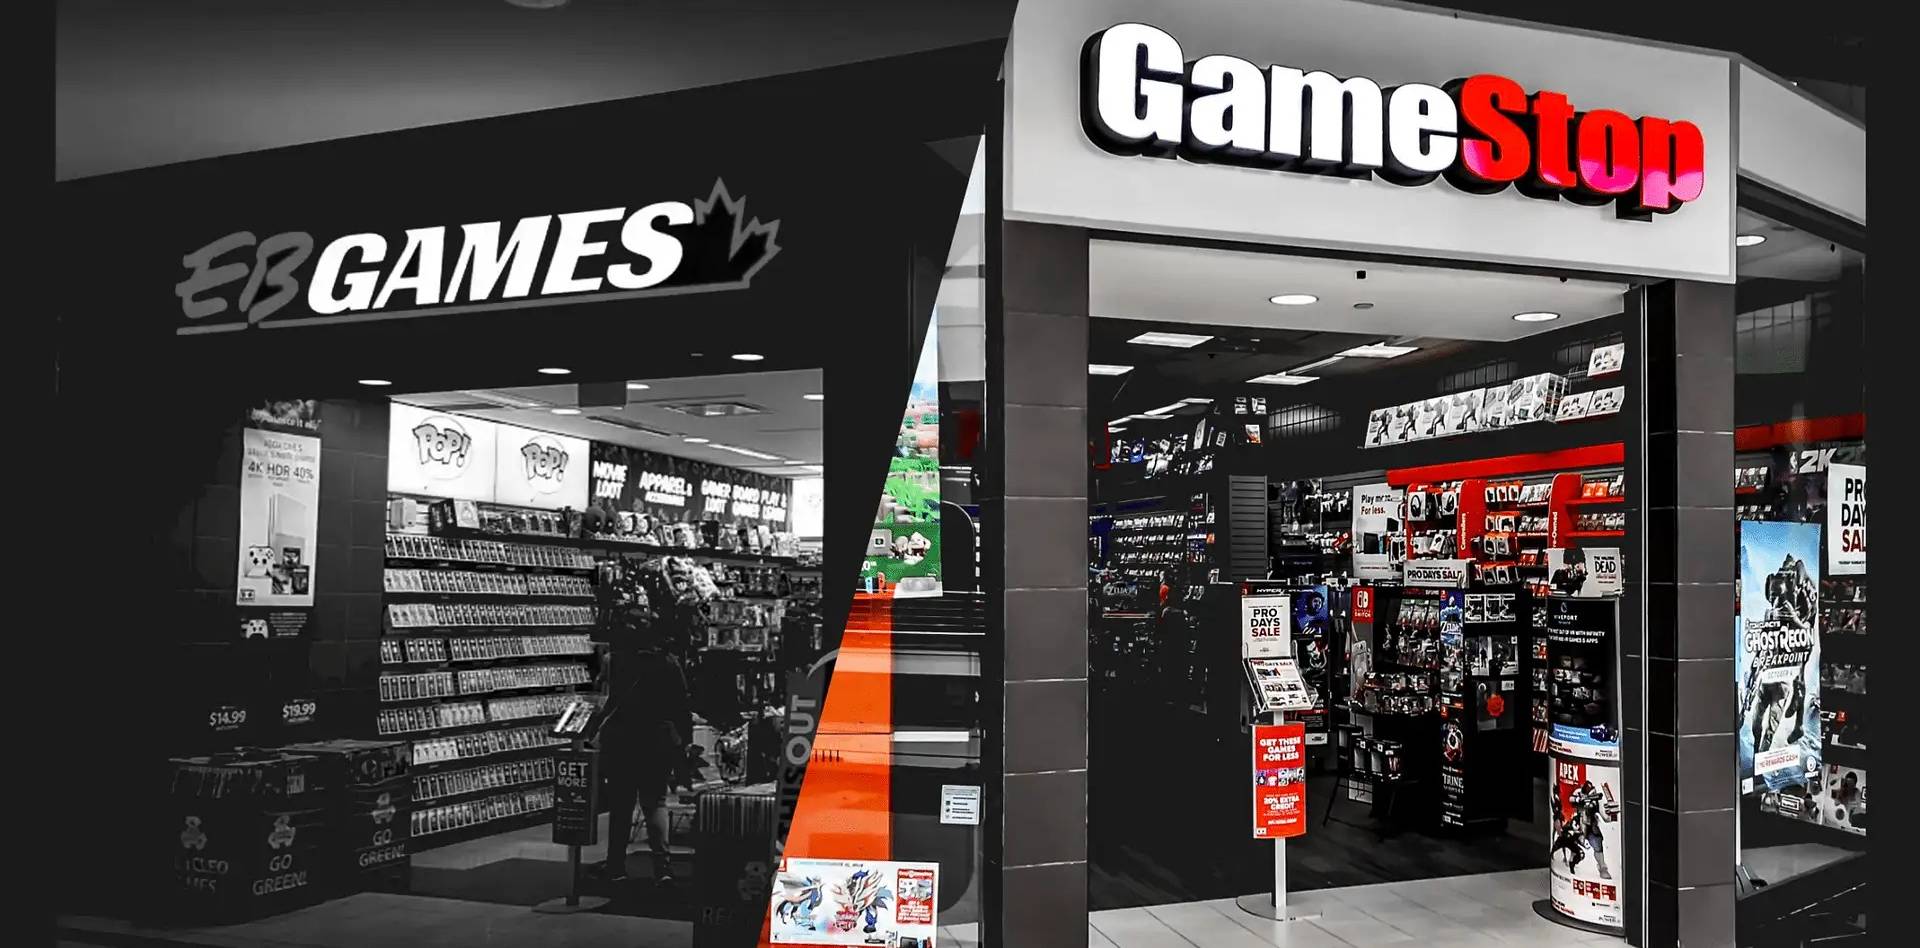 EB Games - GameStop est la plus Grande Chaîne de vente de jeux vidéo au Monde